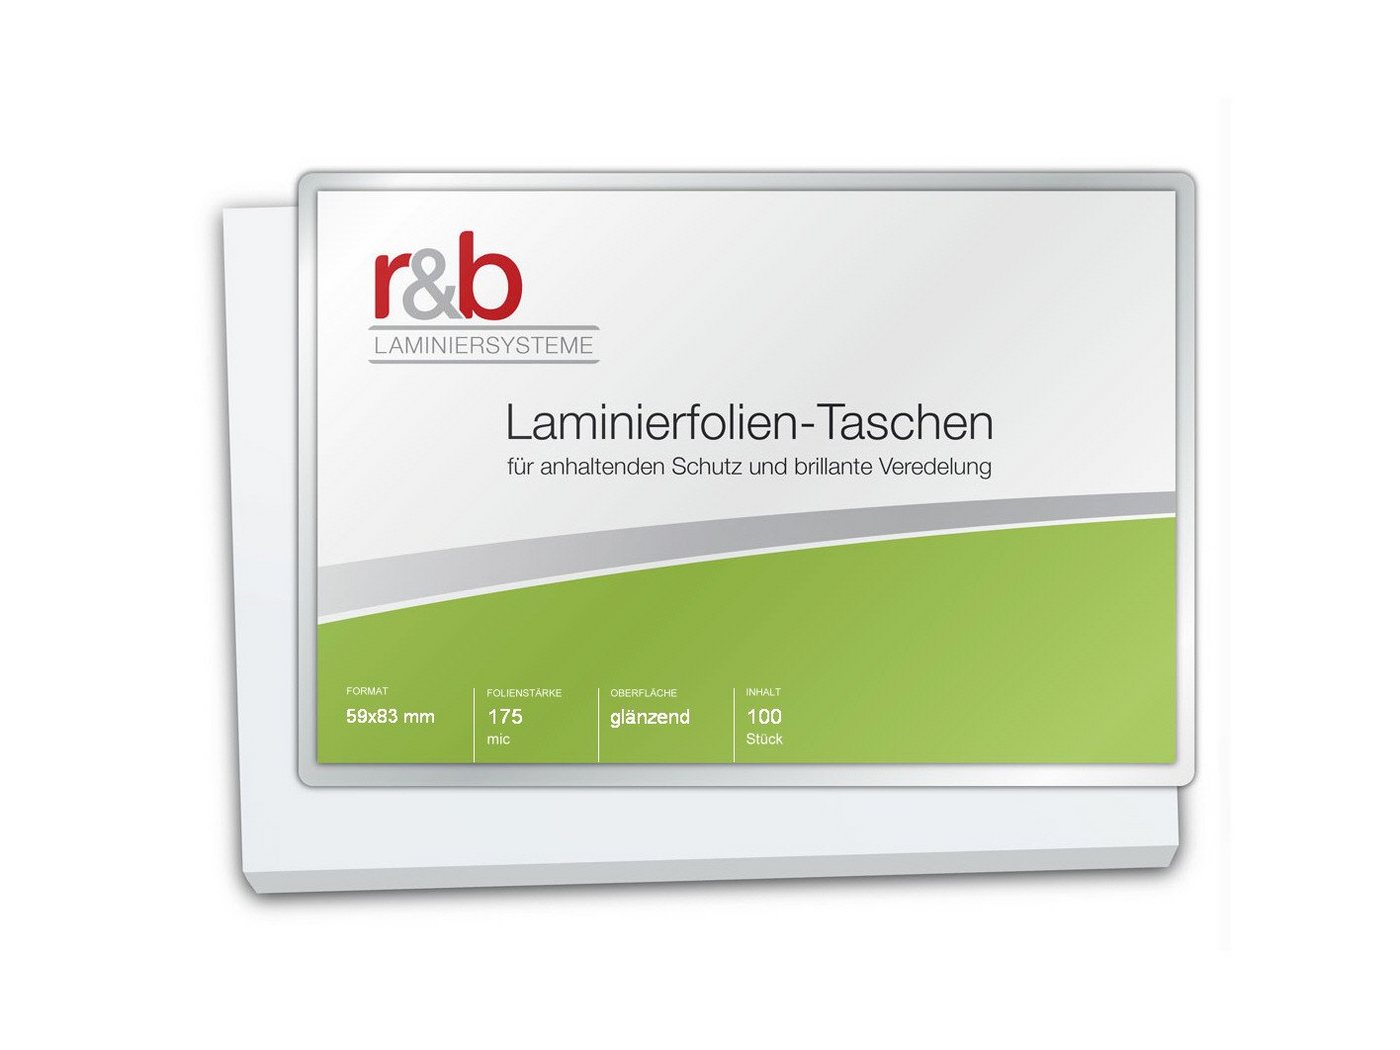 r&b Laminiersysteme Schutzfolie Laminierfolien IBM Card (59 x 83 mm), 2 x 175 mic, glänzend von r&b Laminiersysteme